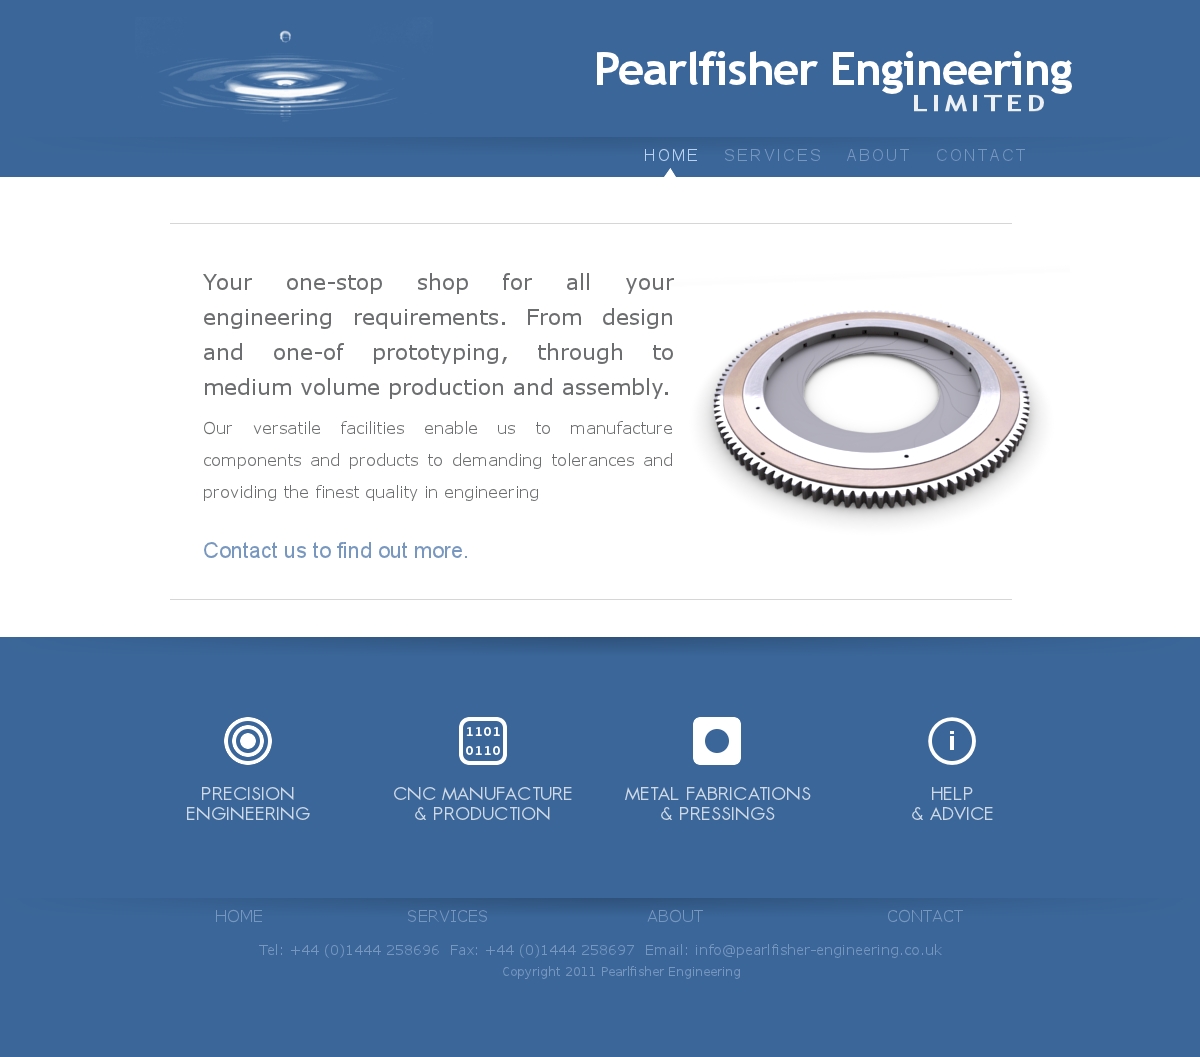 Pearlfisher Engineering